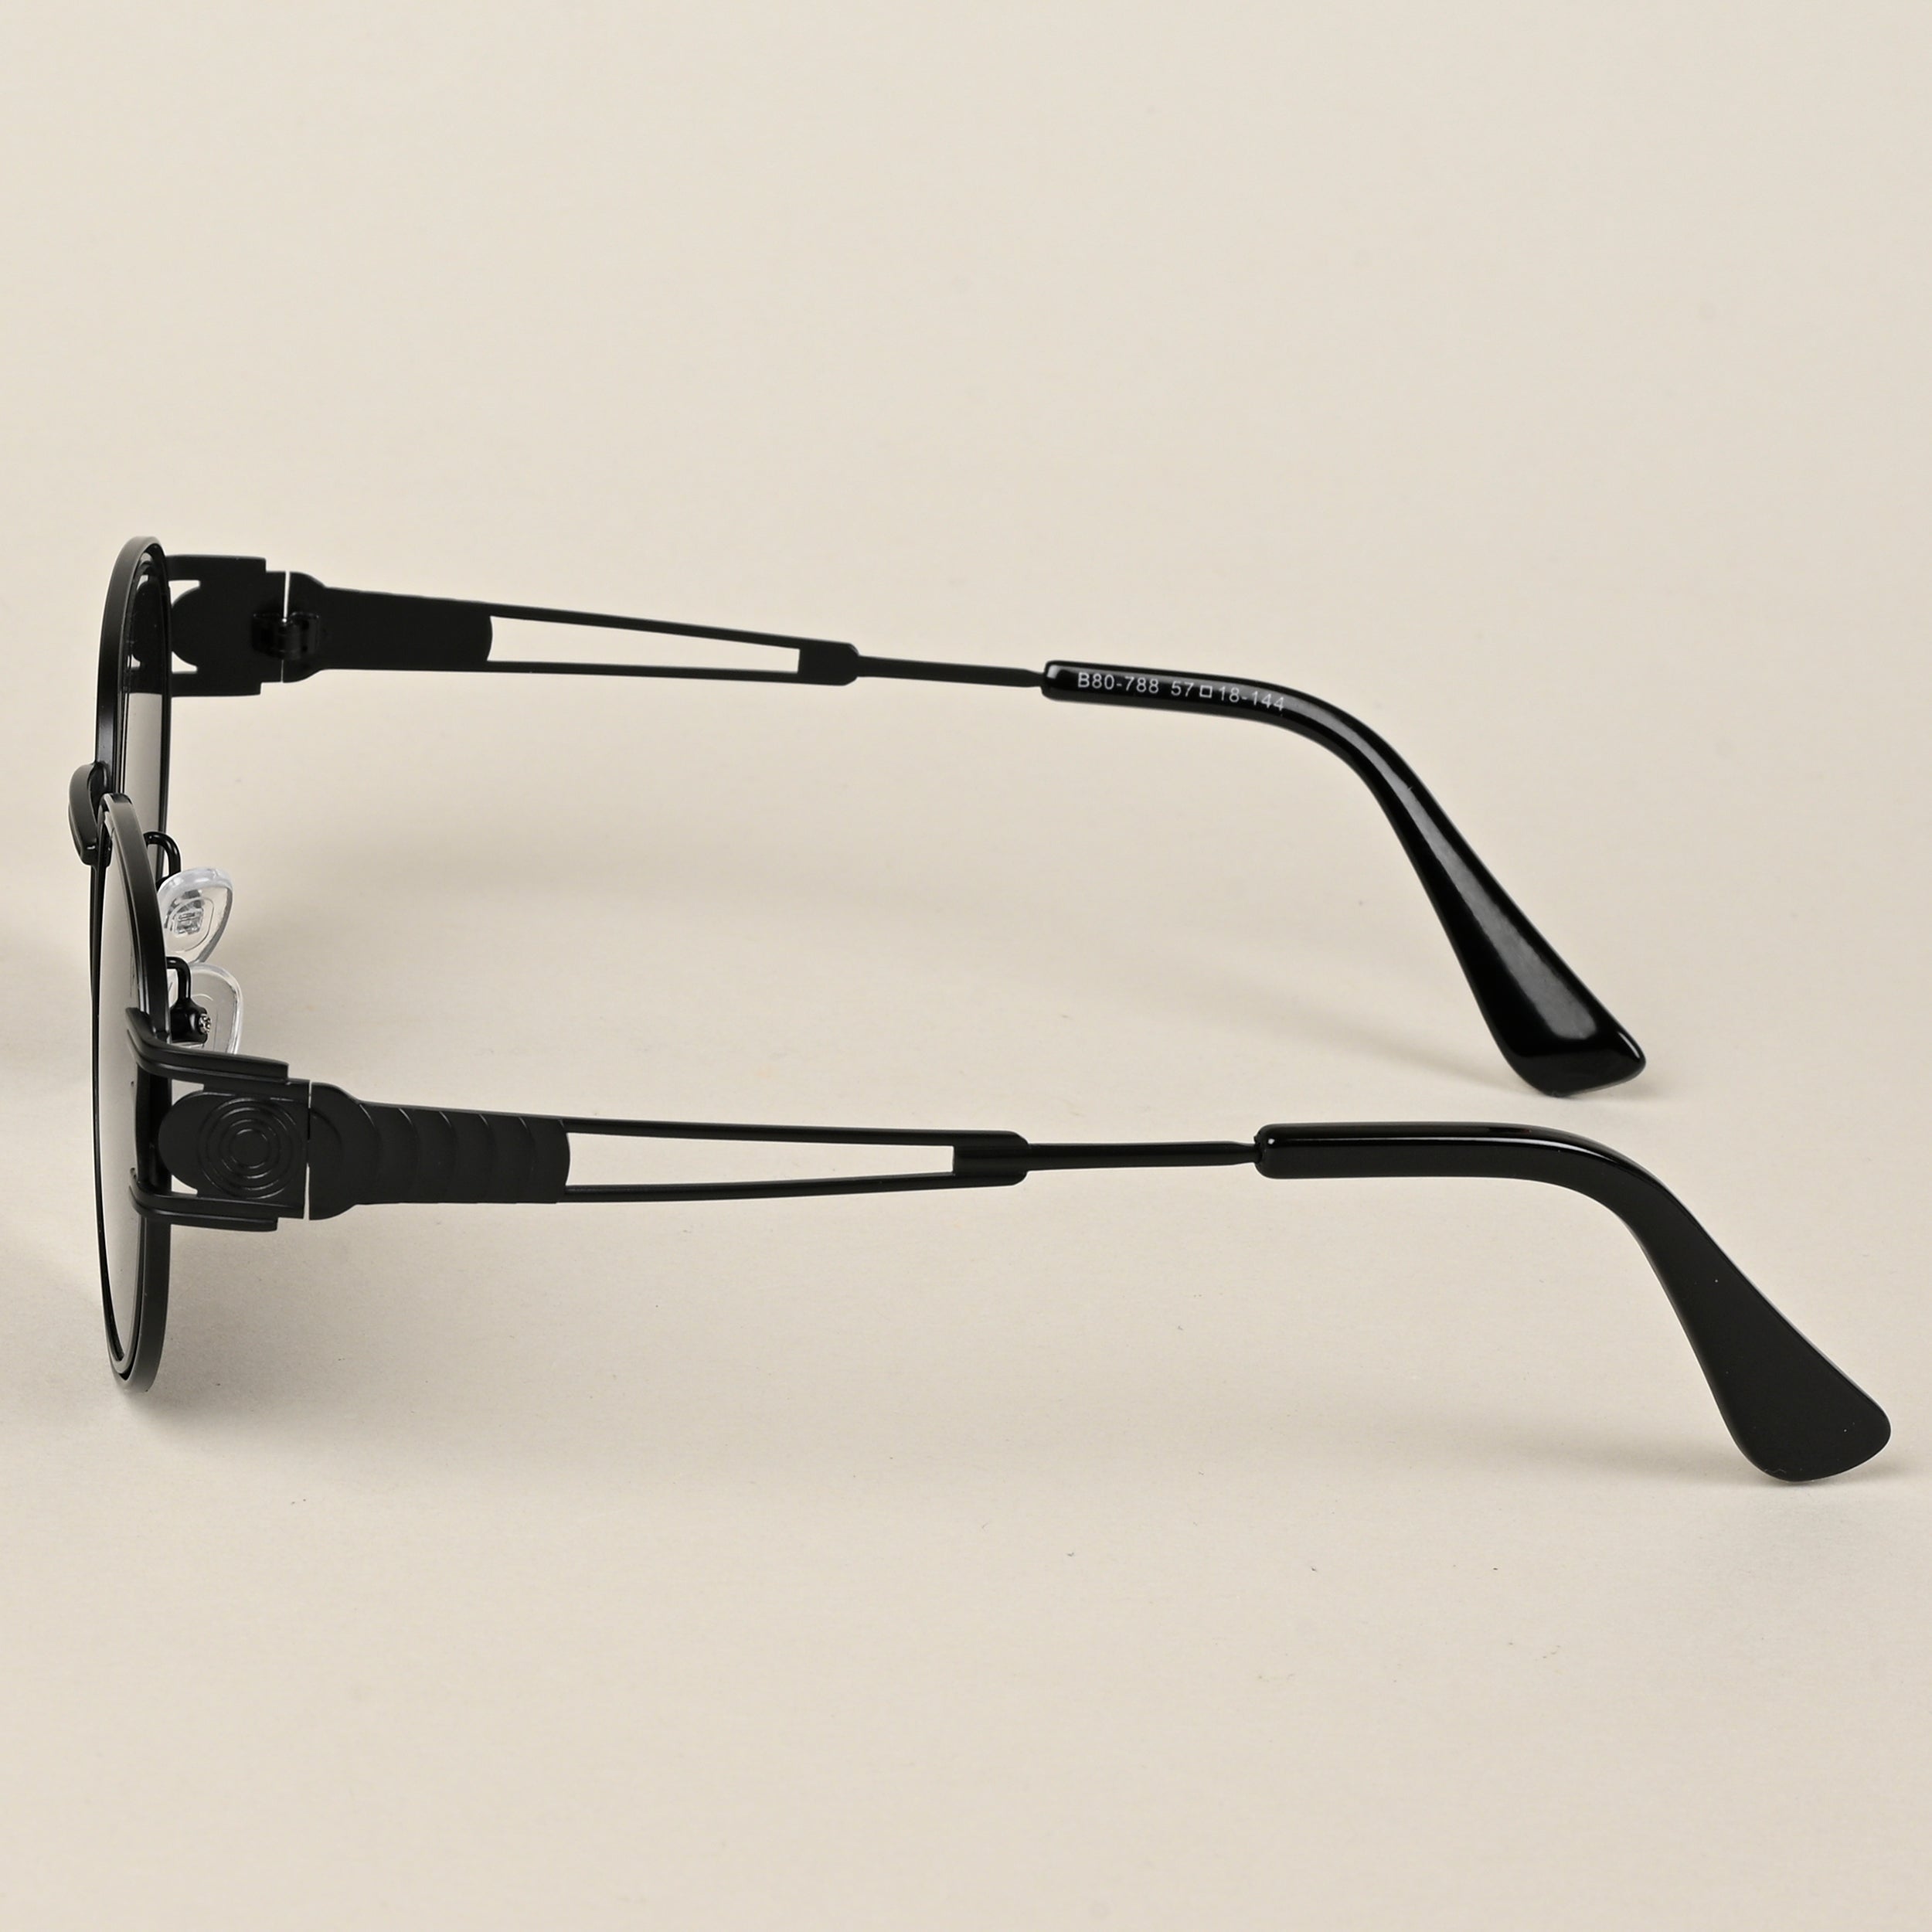 Voyage Oval Sunglasses for Men & Women (Black Lens | Black Frame - MG5201)